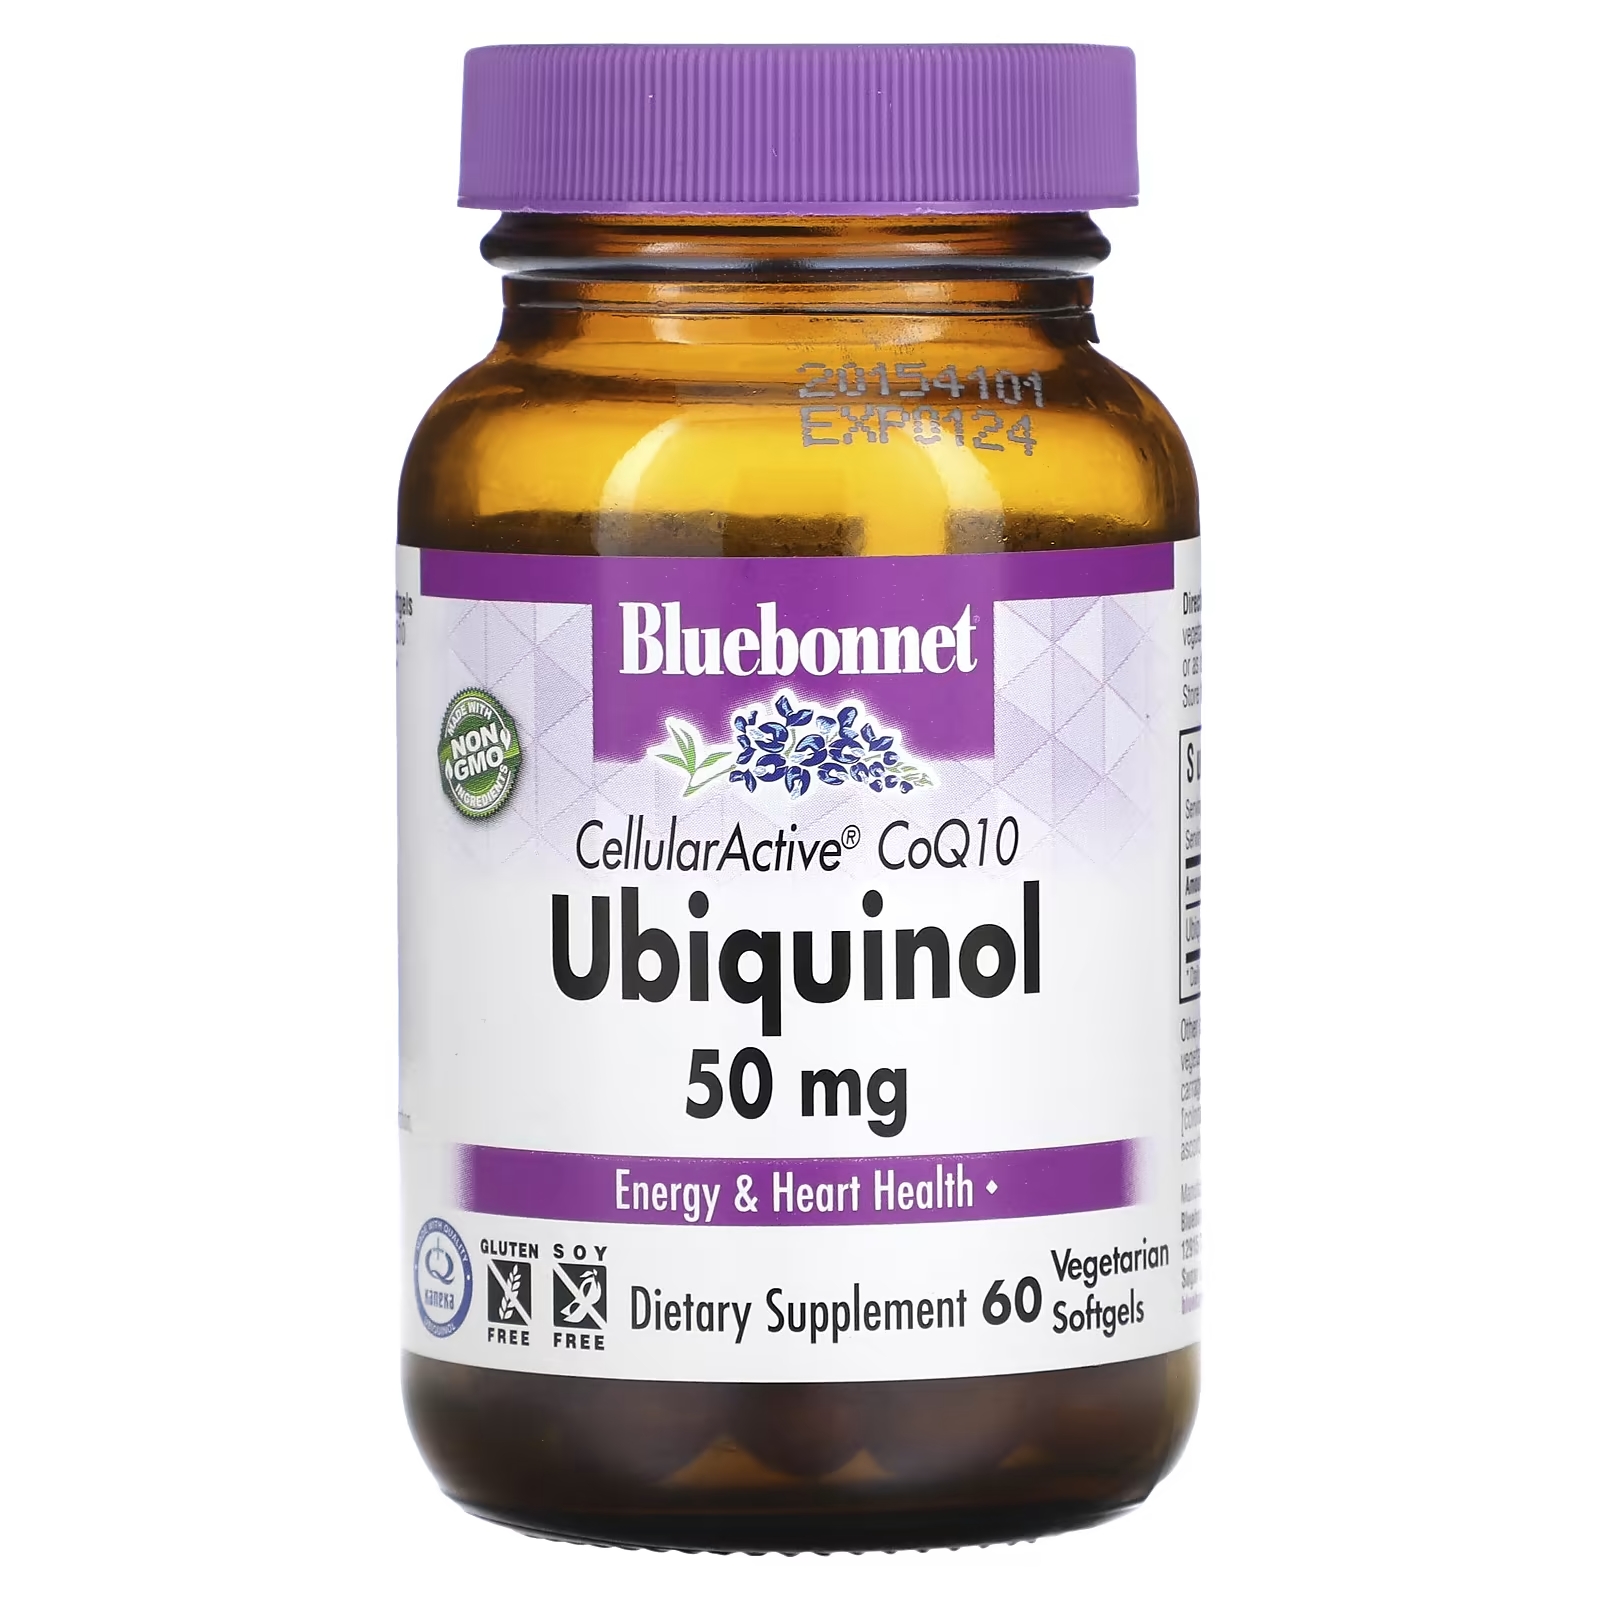 bluebonnet nutrition пиколинат цинка 50 мг 50 растительных капсул Bluebonnet Nutrition Ubiquinol Cellular Active CoQ10 50 мг, 60 растительных капсул